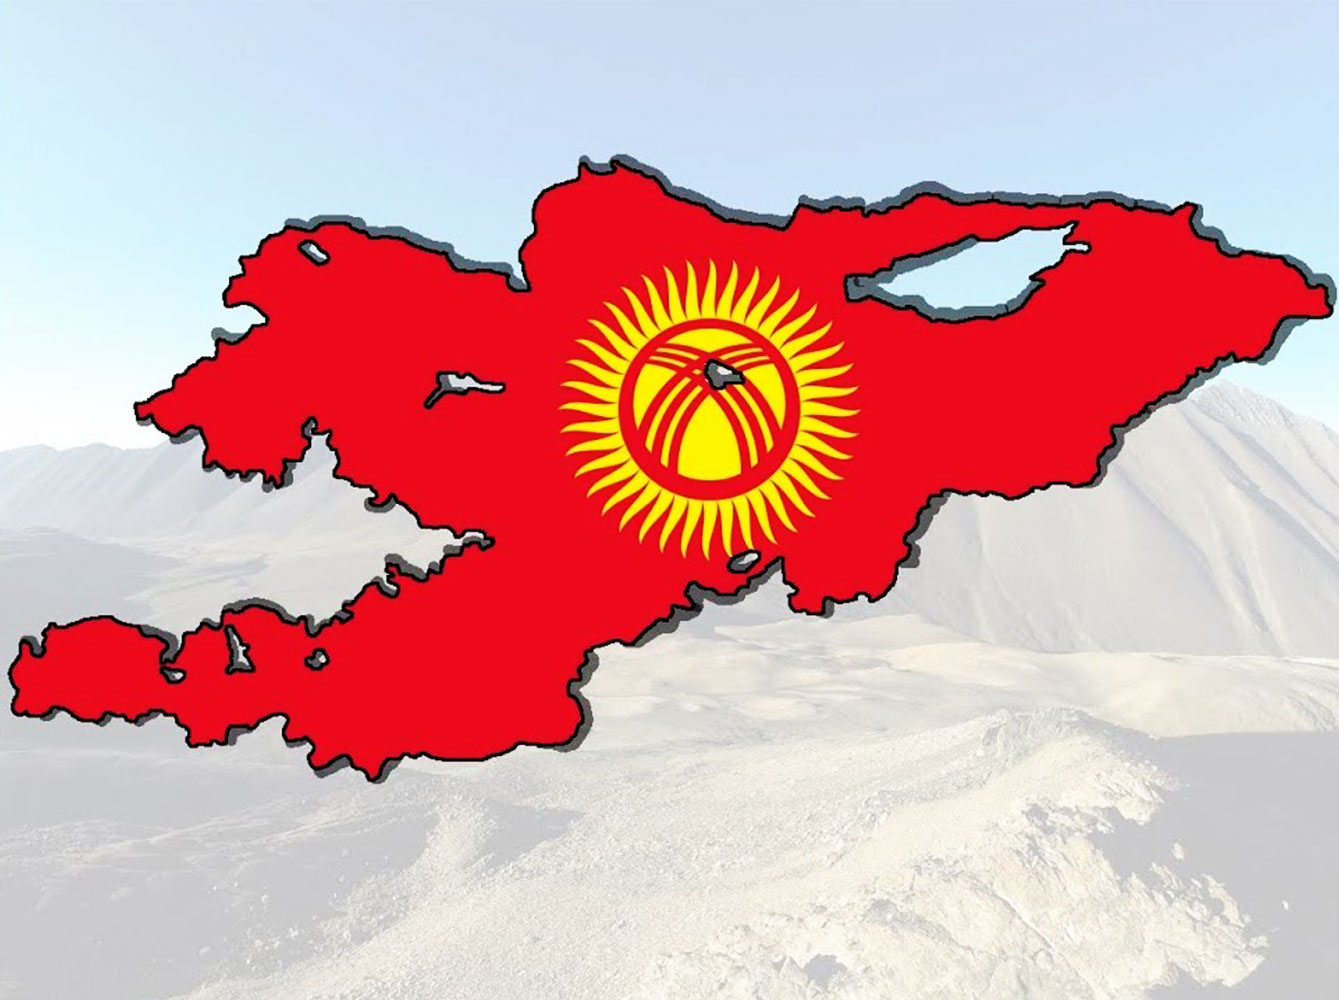 Кр вый. Кыргызстан карта флаг. Карта Киргизии с флагом. Контур Киргизии флаг. Флаг Кыргызстана на фоне гор.